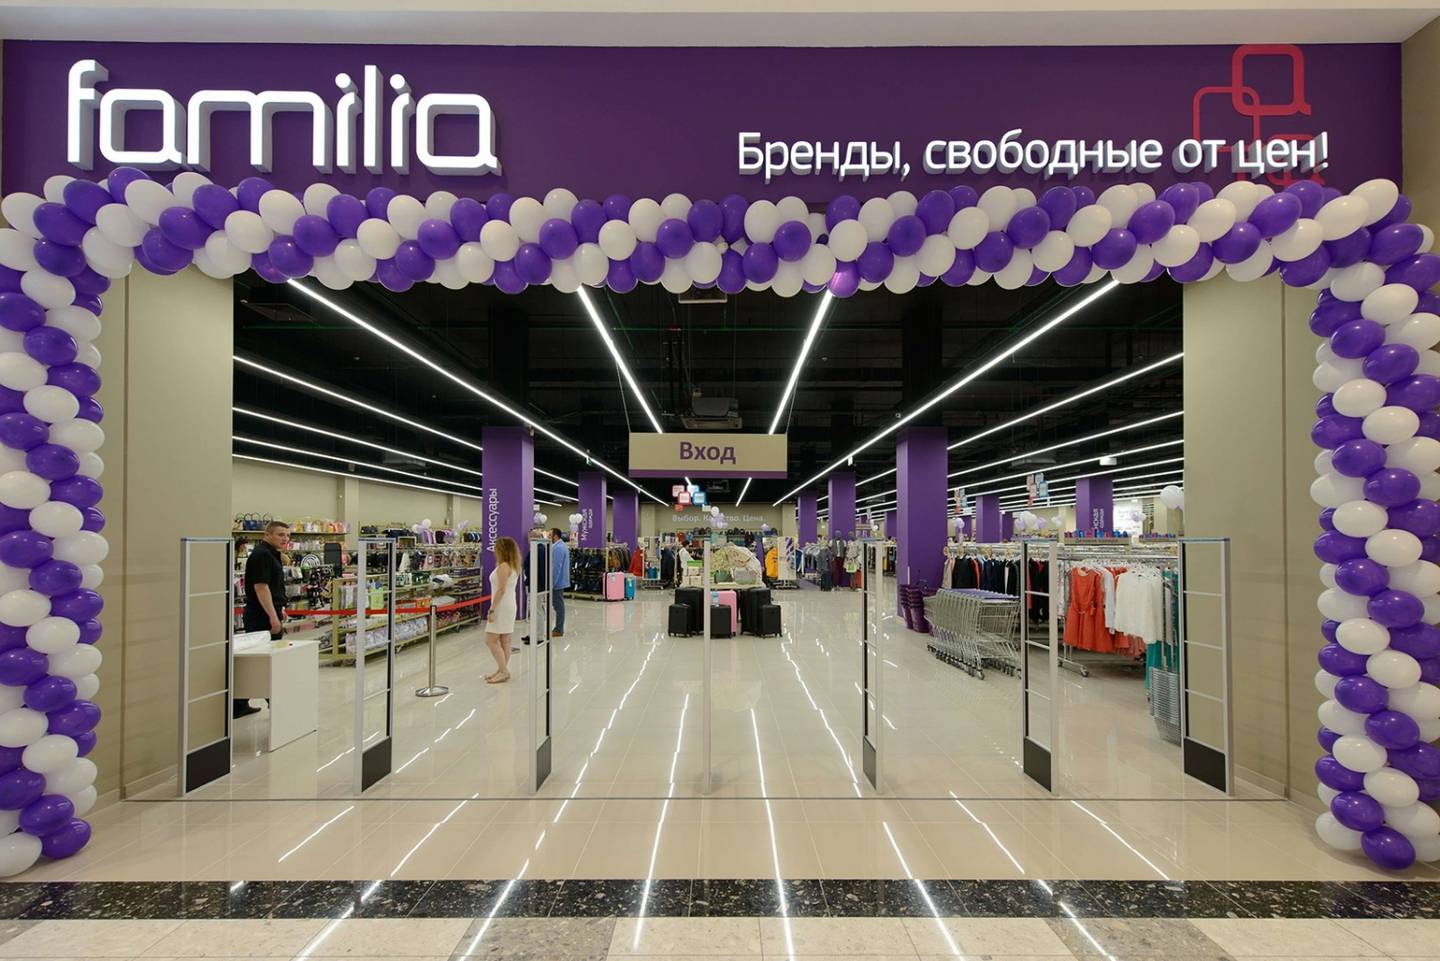 A Familia store in Russia. Familia.